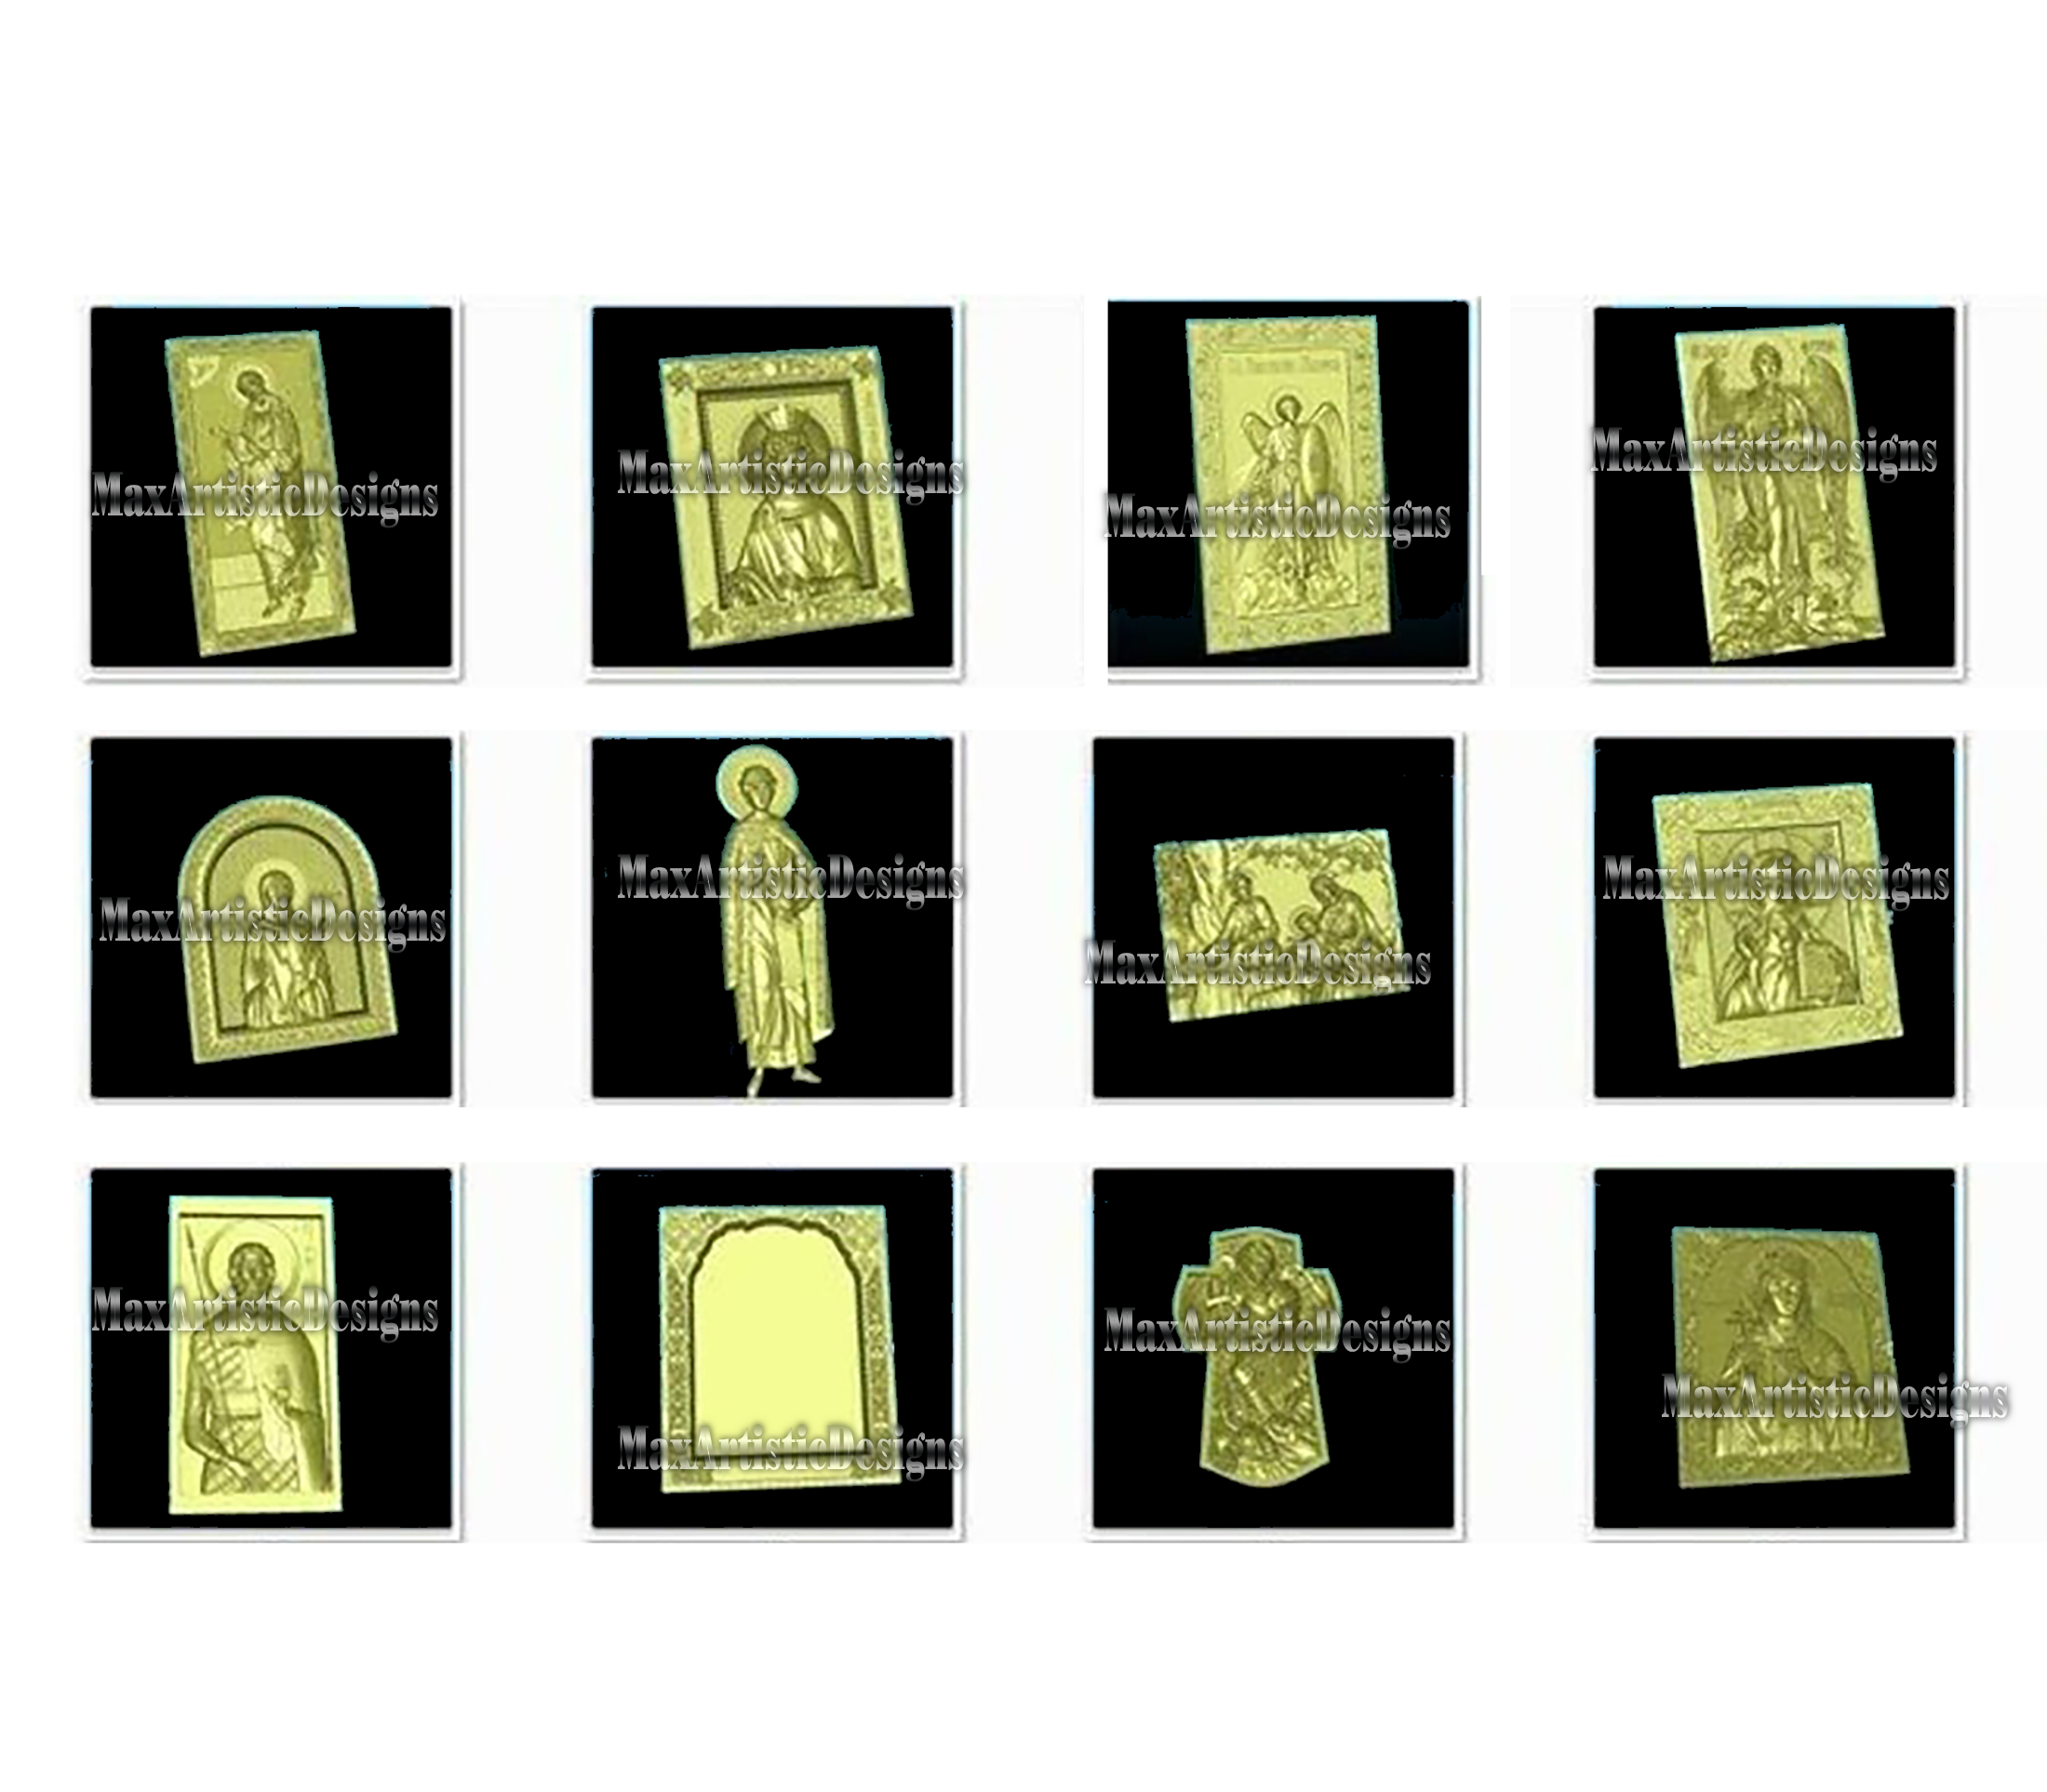 Oltre 450 modelli stl 3d – set di icone di religione per router cnc artcam aspire cut3d vcarve router cnc